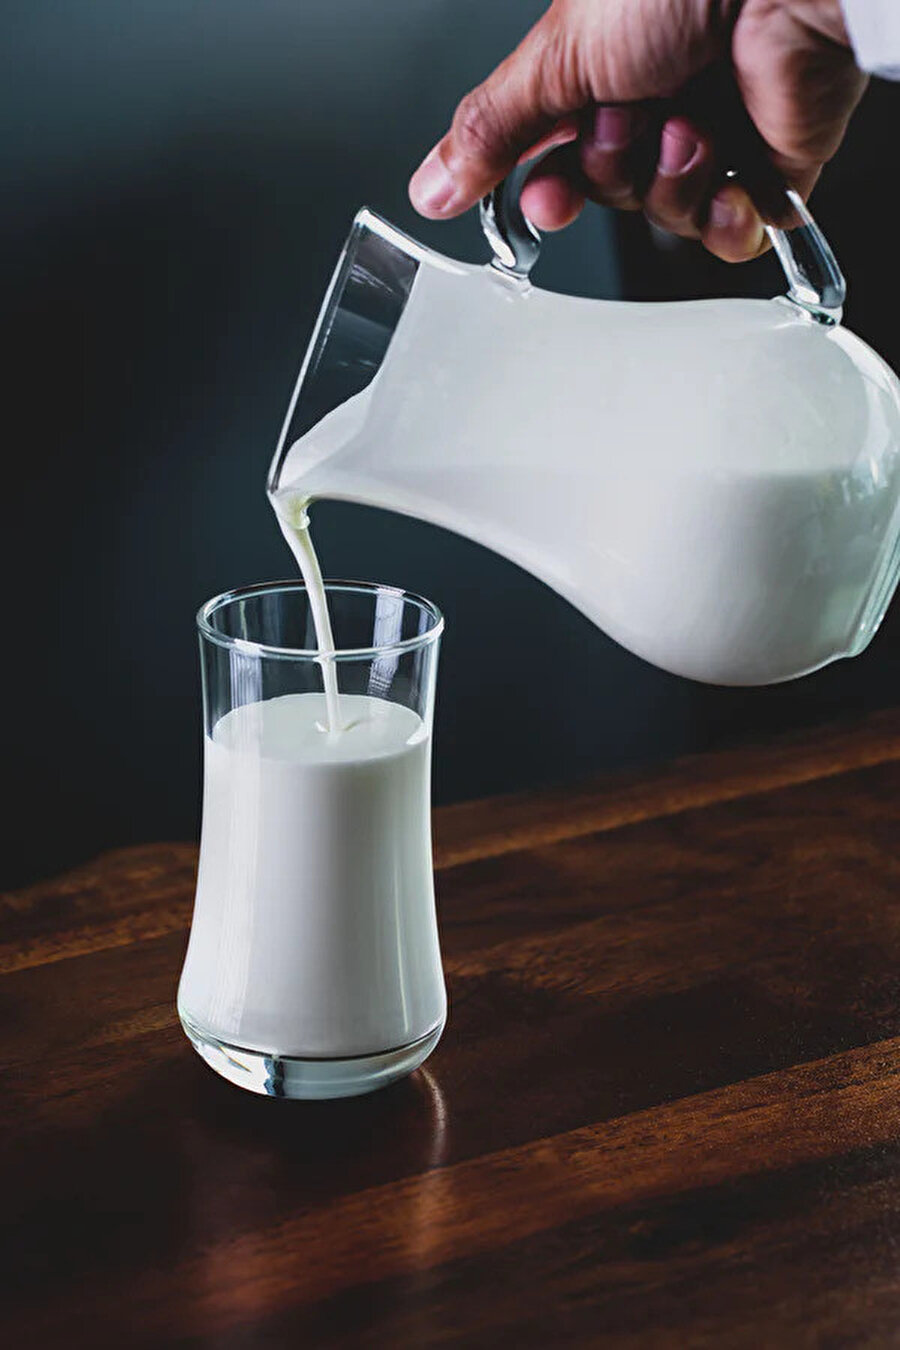 Açık süt kullanmak doğal yoğurt elde etmek için oldukça önemlidir.